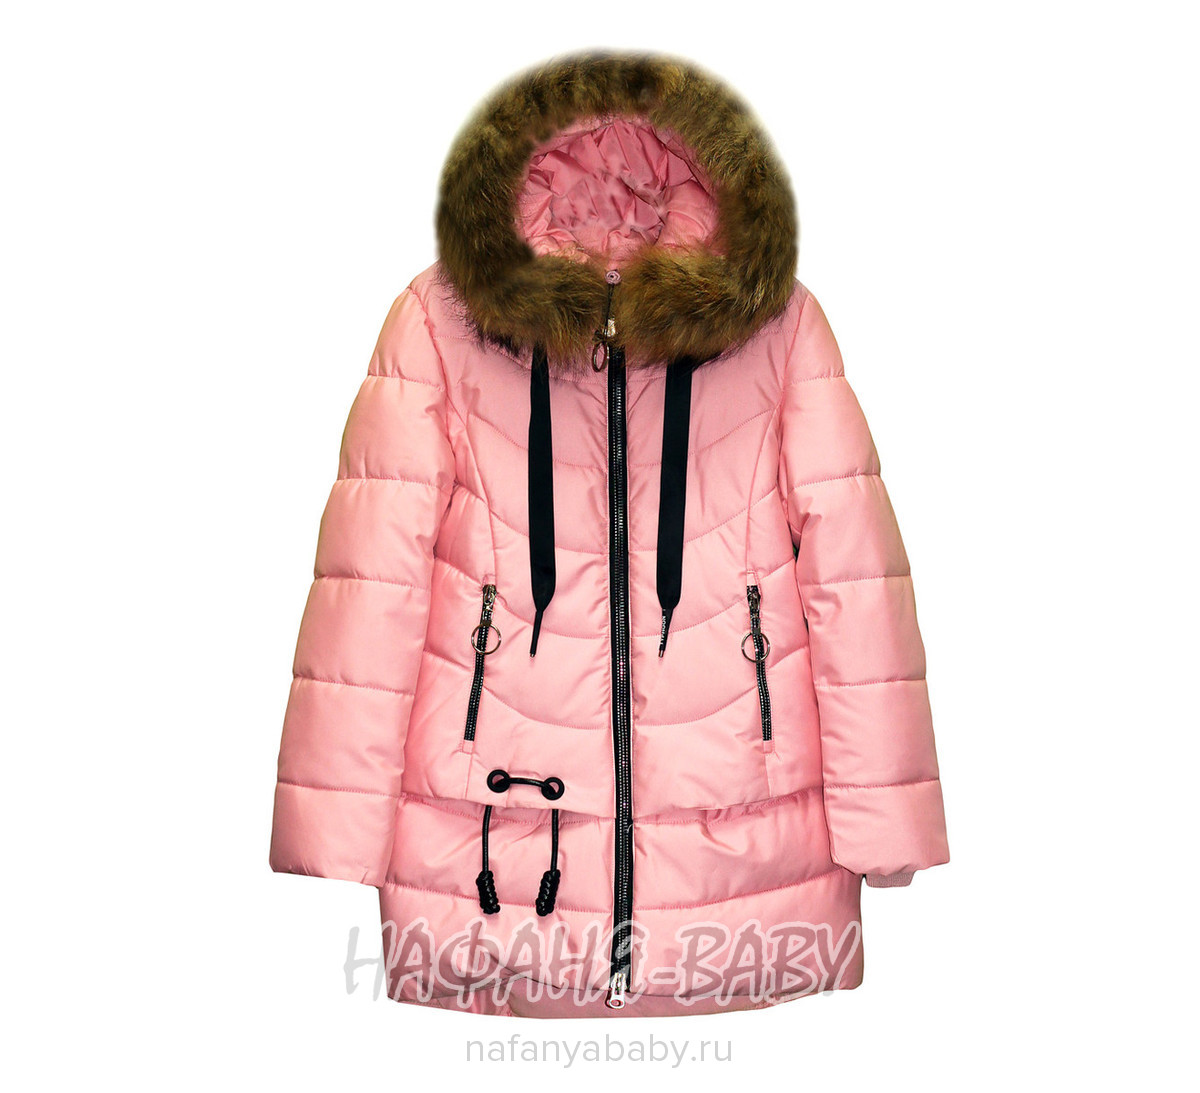 Подростковая зимняя куртка  DELFIN арт: 6819, 10-15 лет, оптом Китай (Пекин)